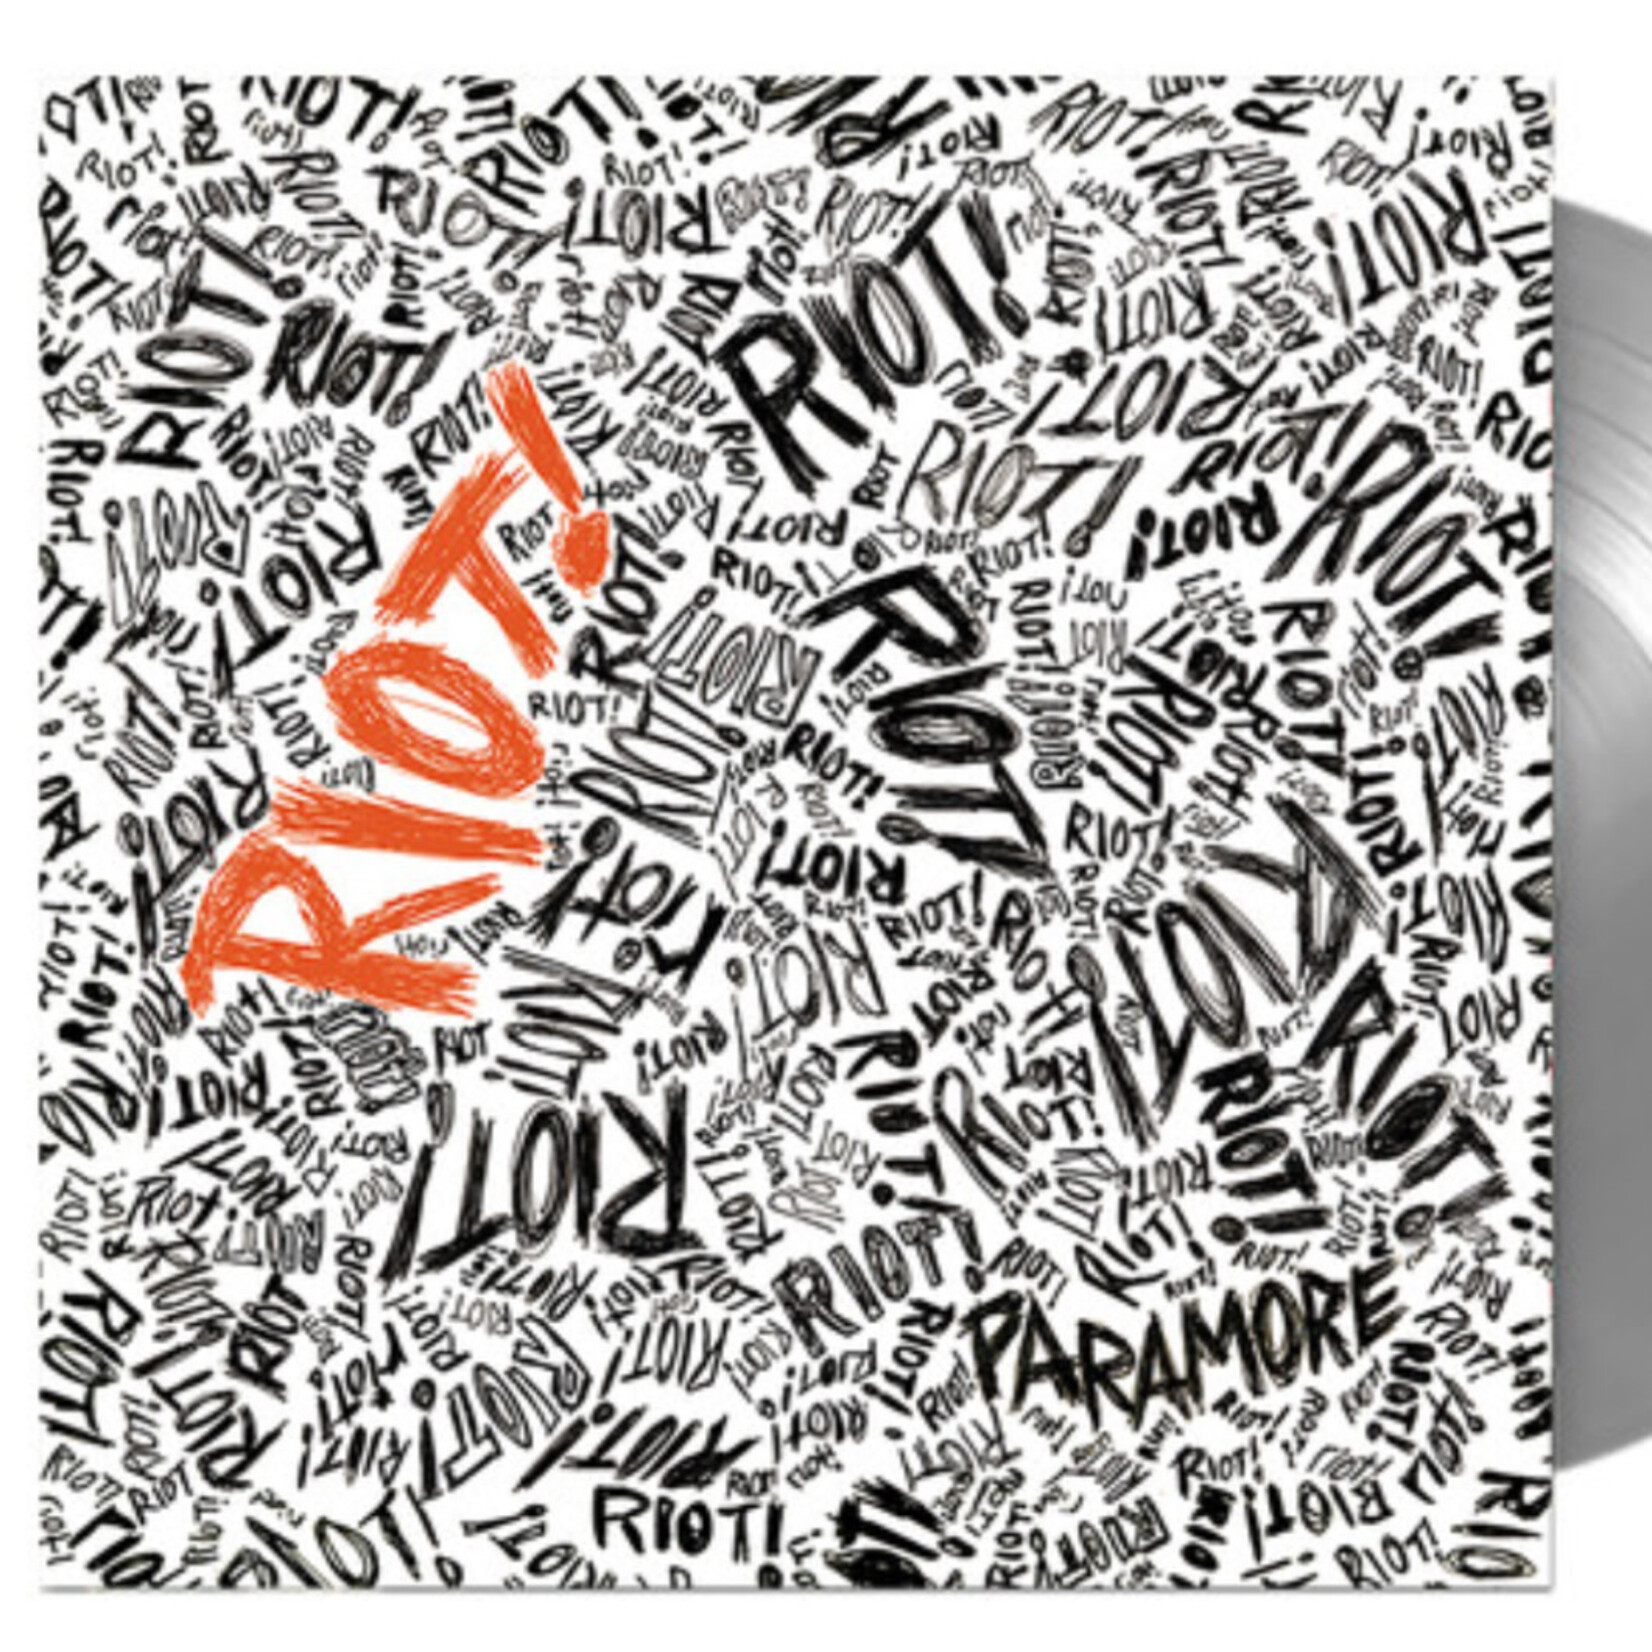 Paramore - Riot - FUEL645950 - Vinyl LP (NEW)